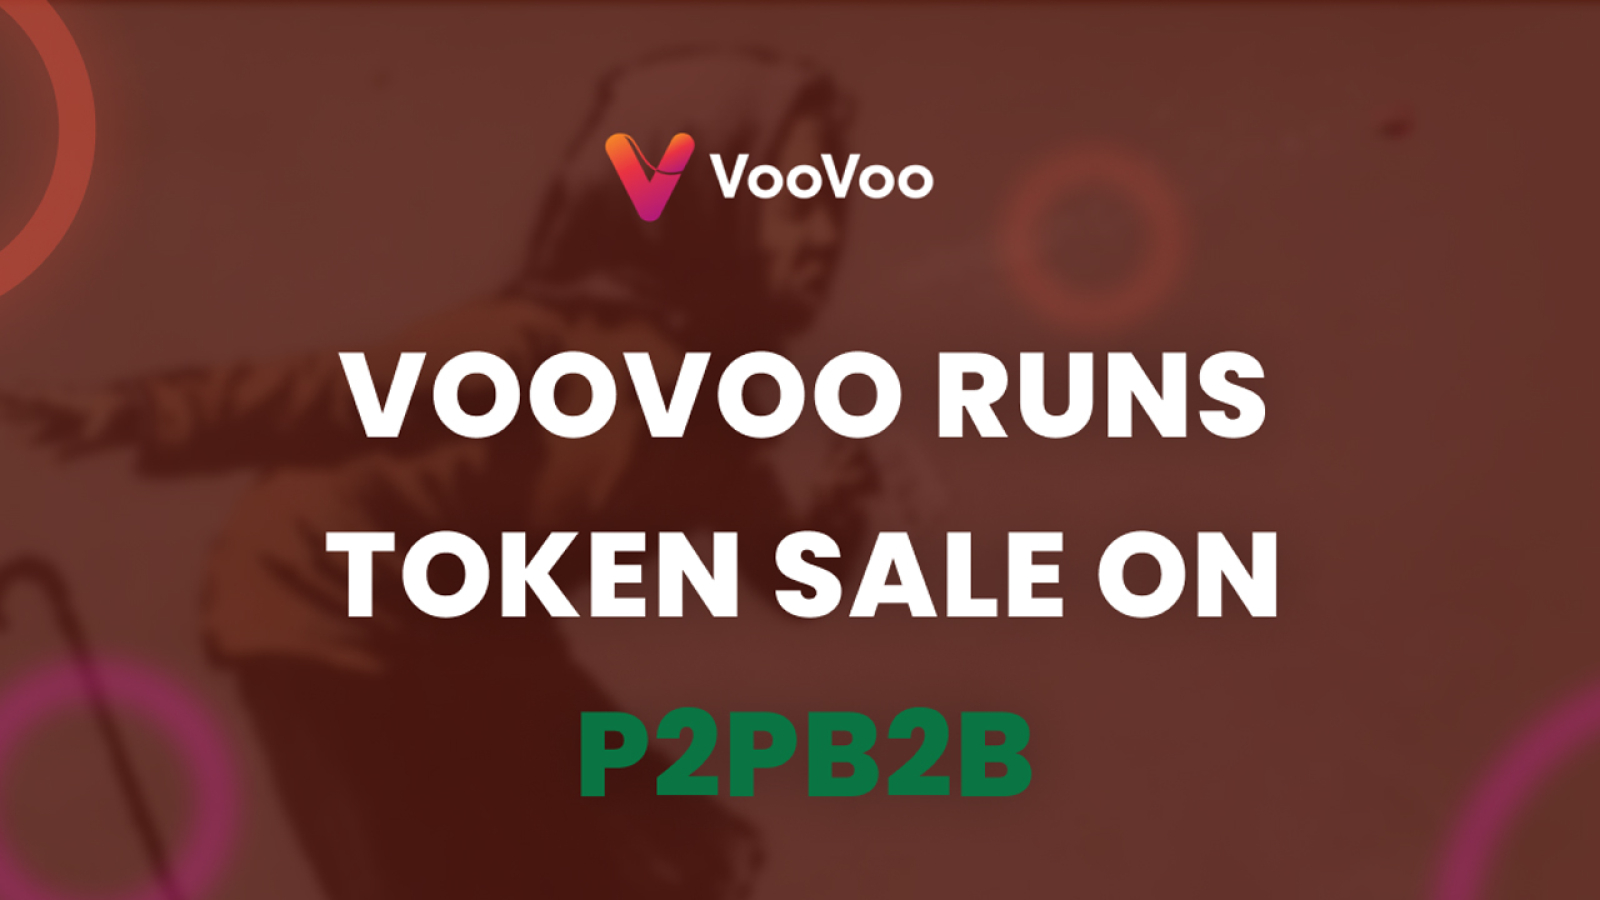 VooVoo Runs Token Sale on P2PB2B